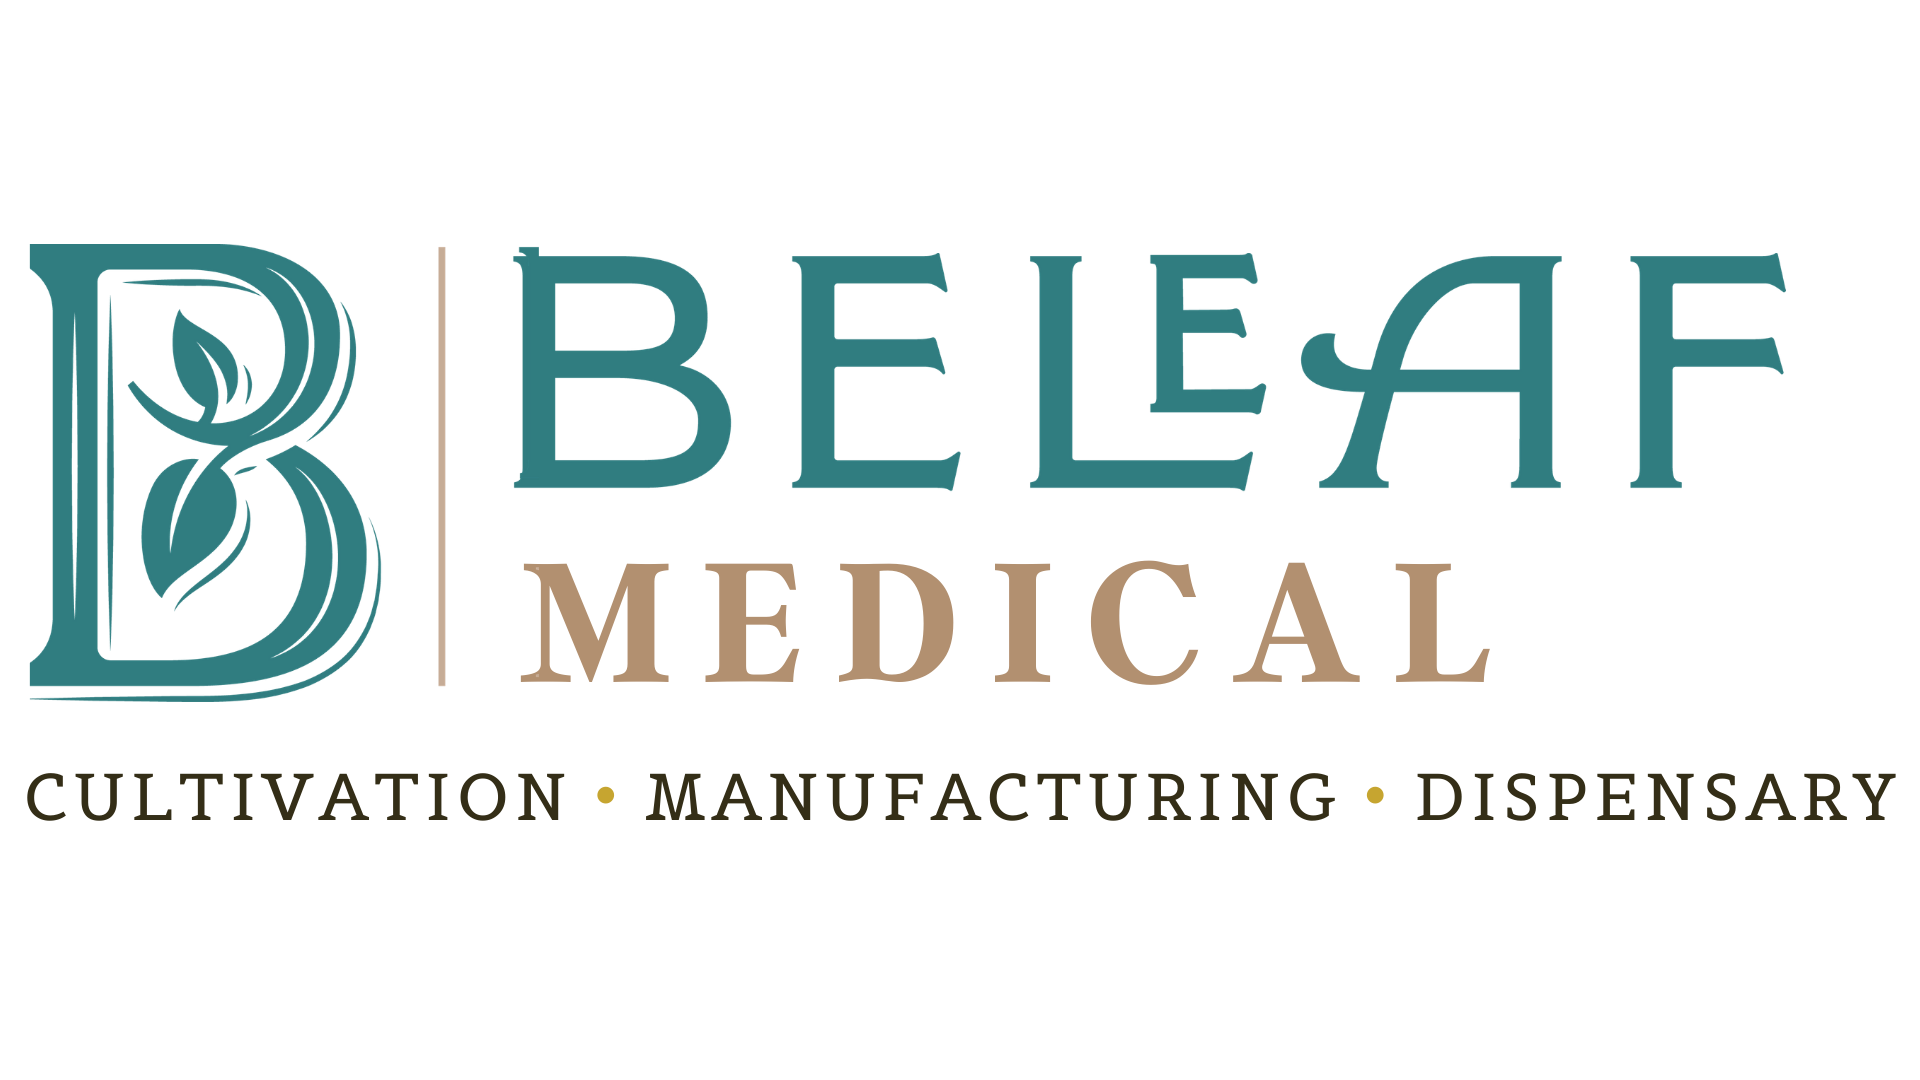 BeLeaf Medical